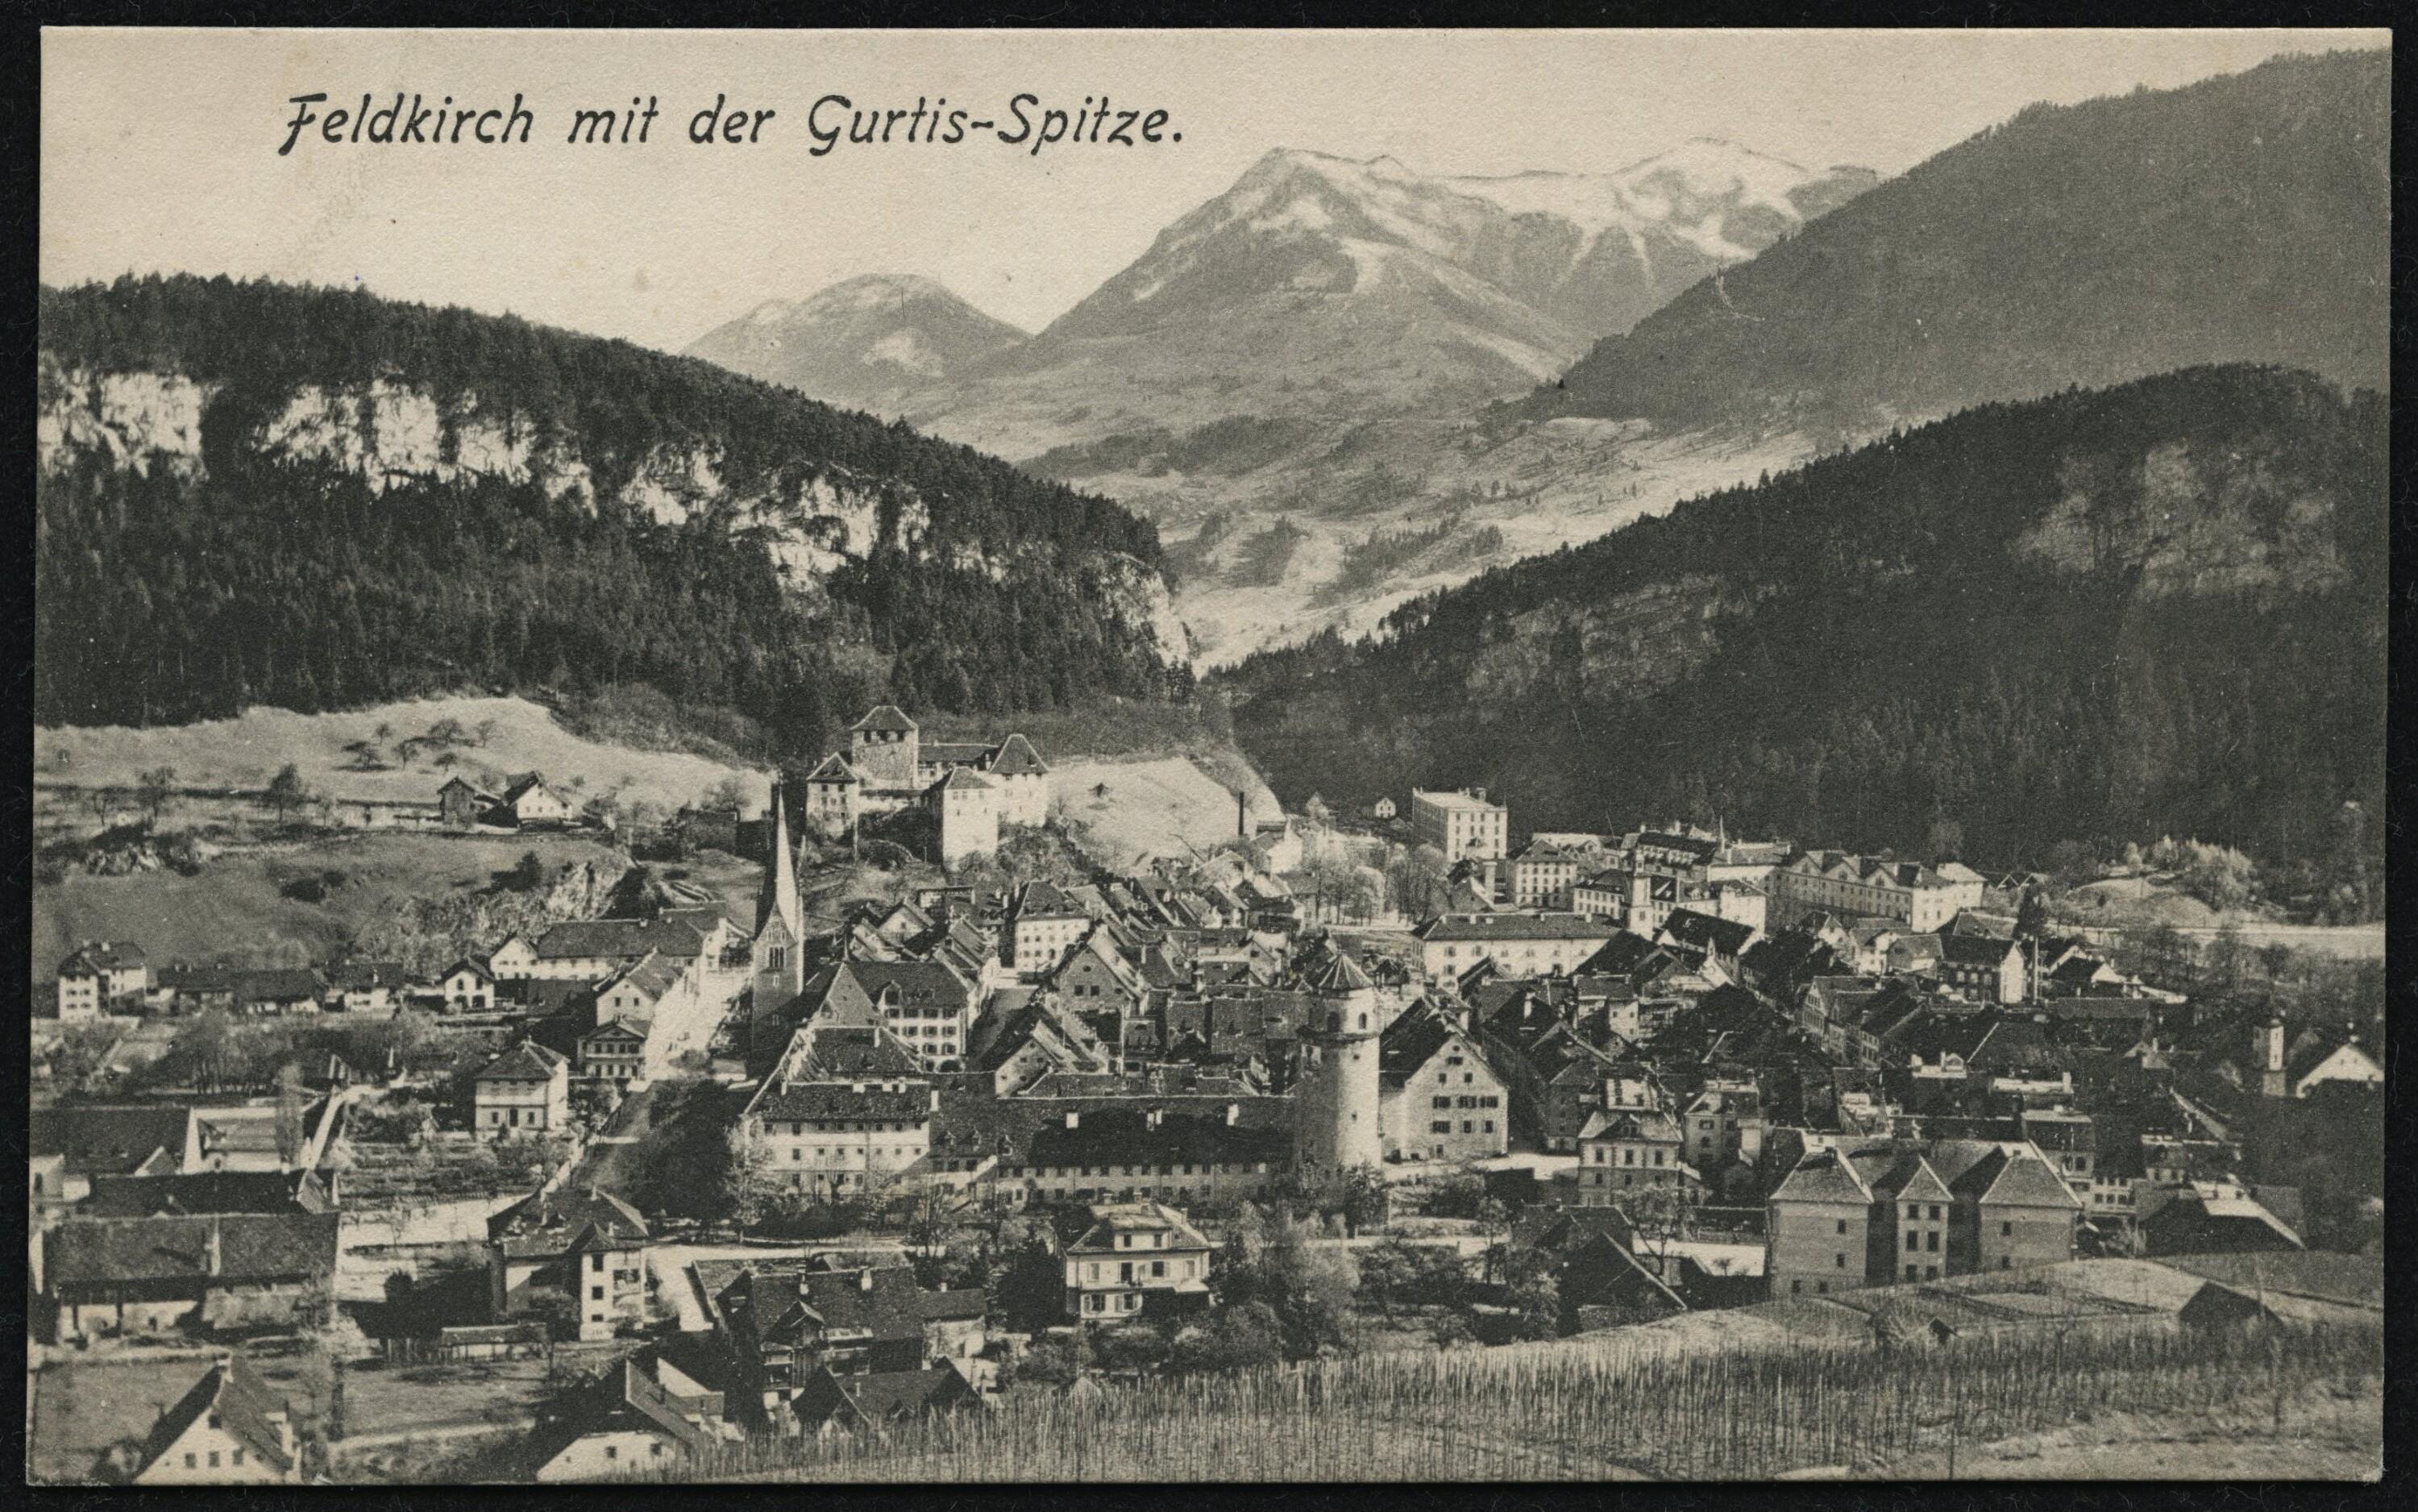 Feldkirch mit der Gurtis-Spitze></div>


    <hr>
    <div class=